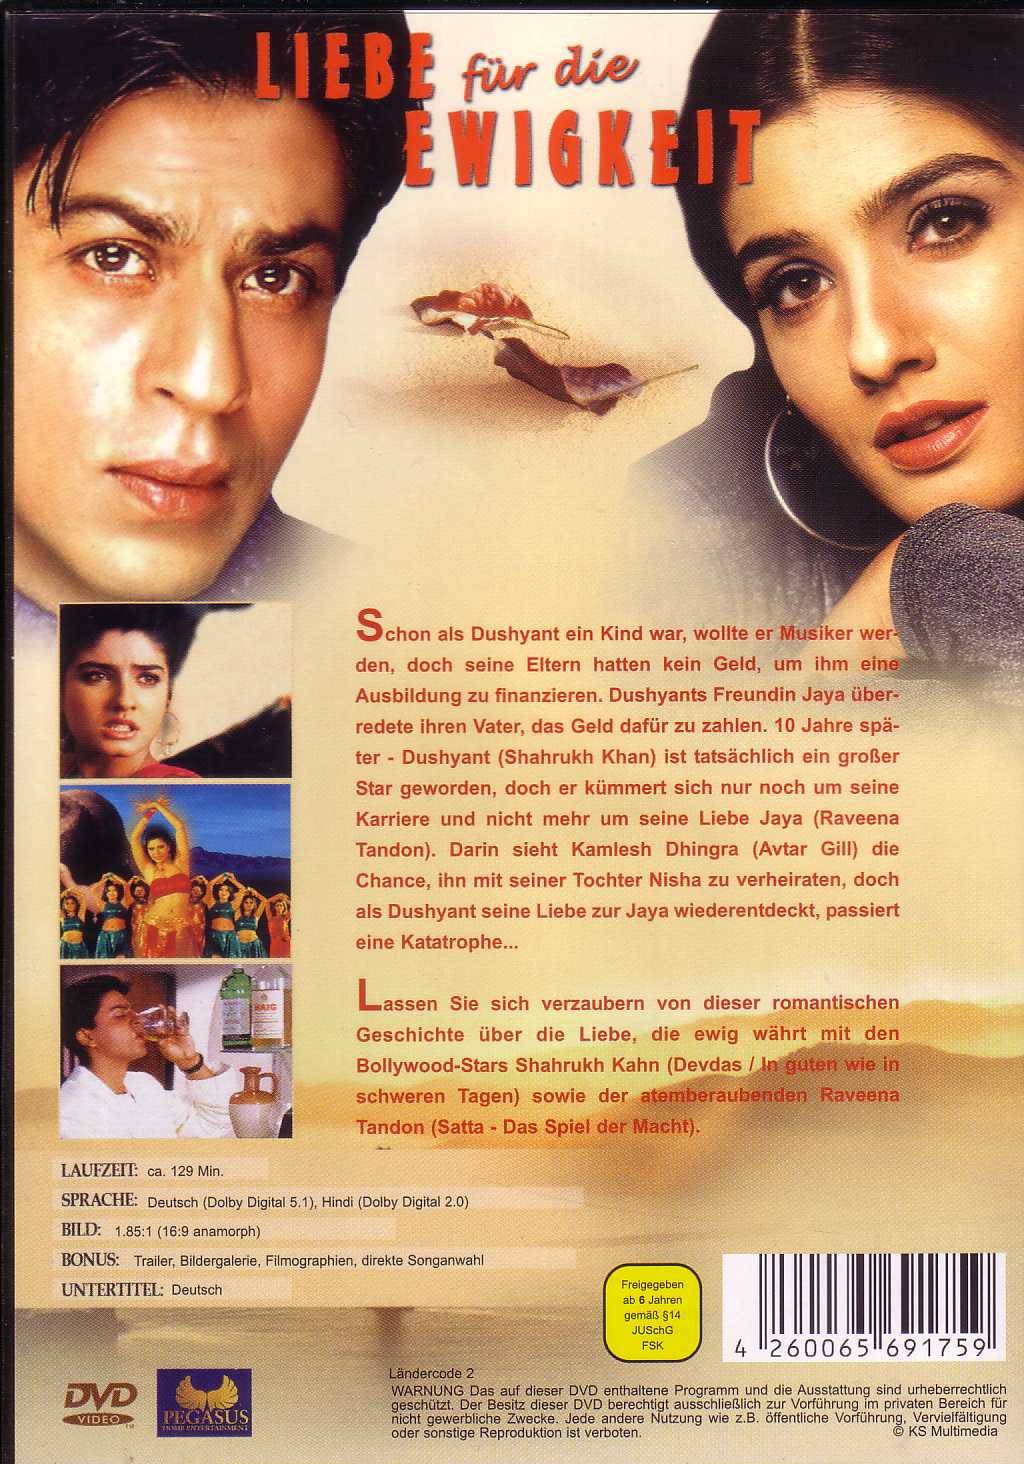 Yeh Lamhe Judaai Ke Movie In Hindi Download 720p Hd